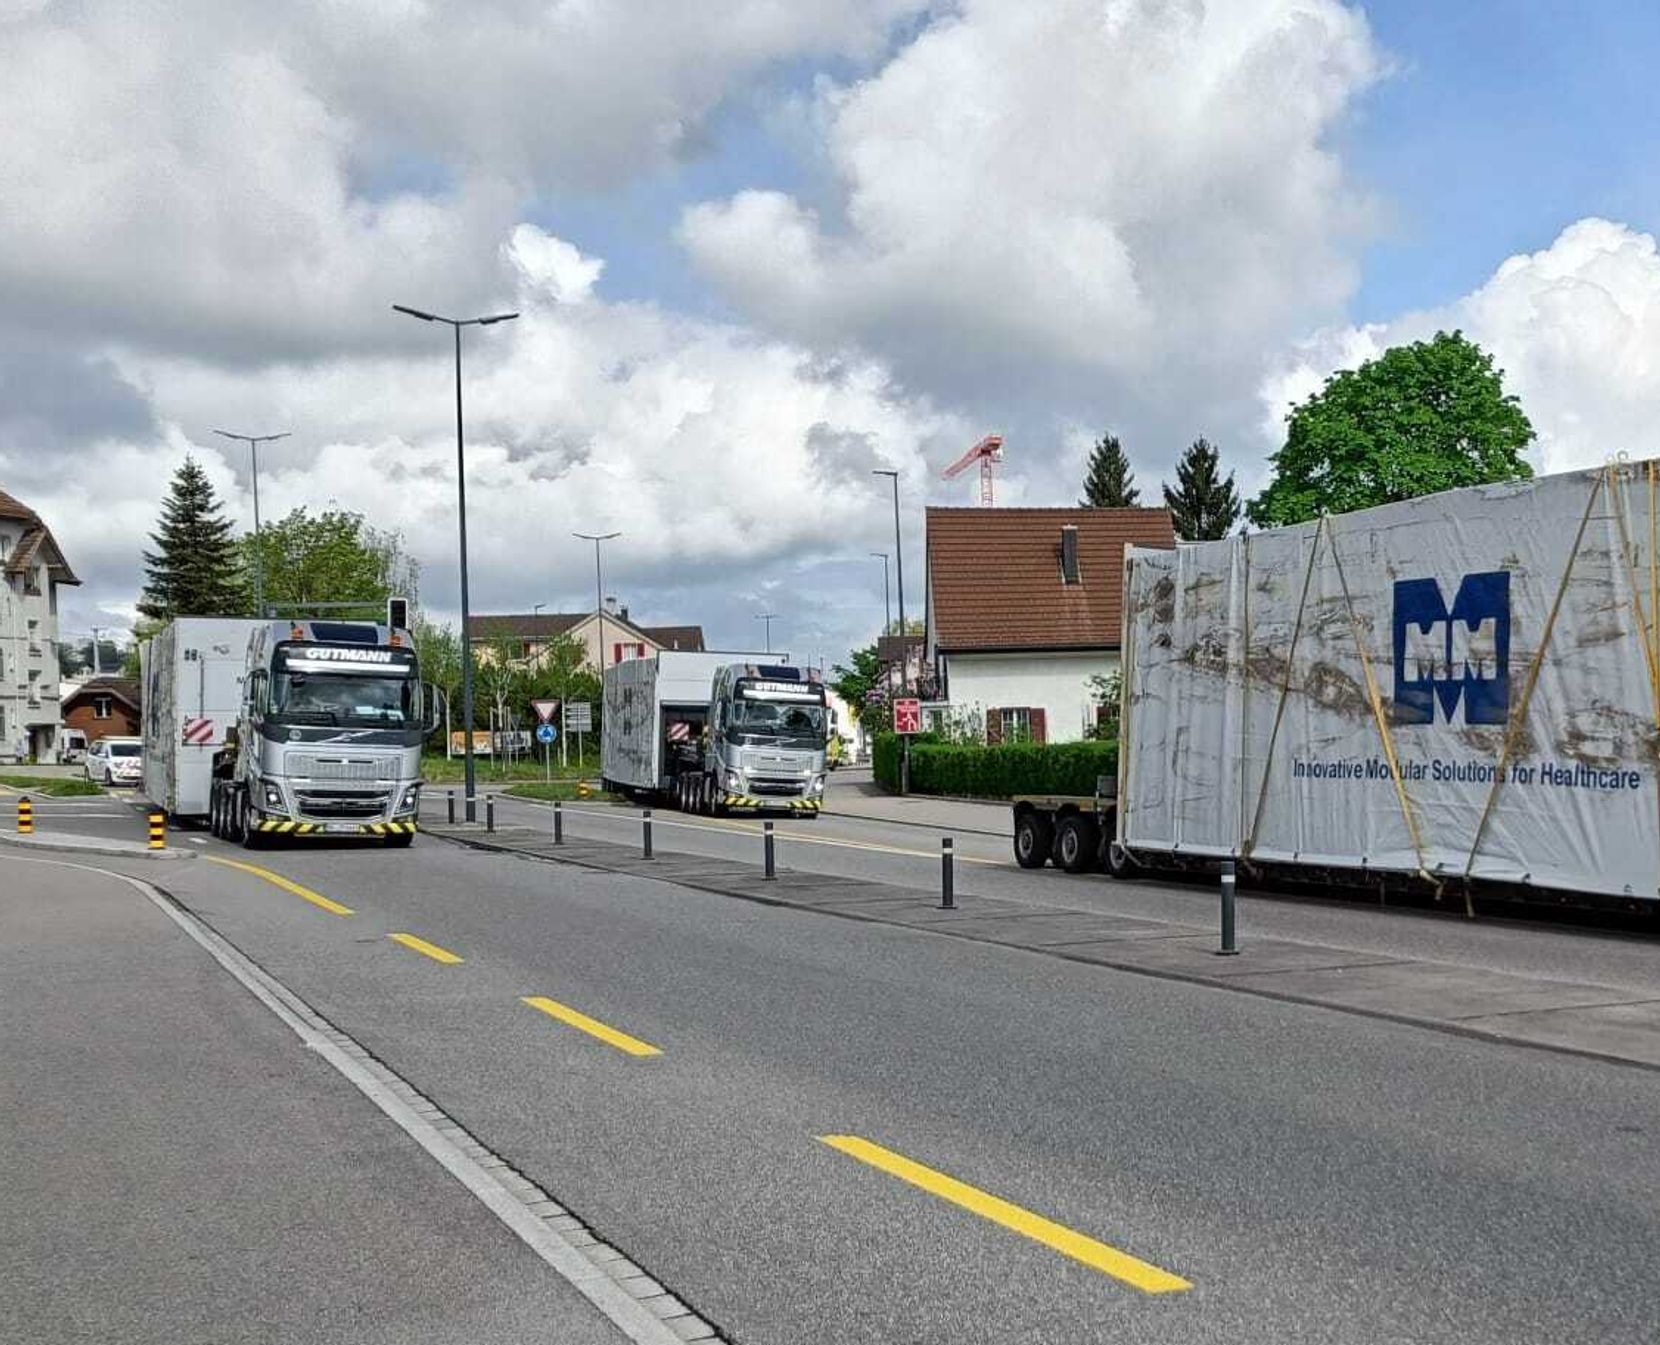 Lastwagen mit grossen Ladungen blockieren Strasse.